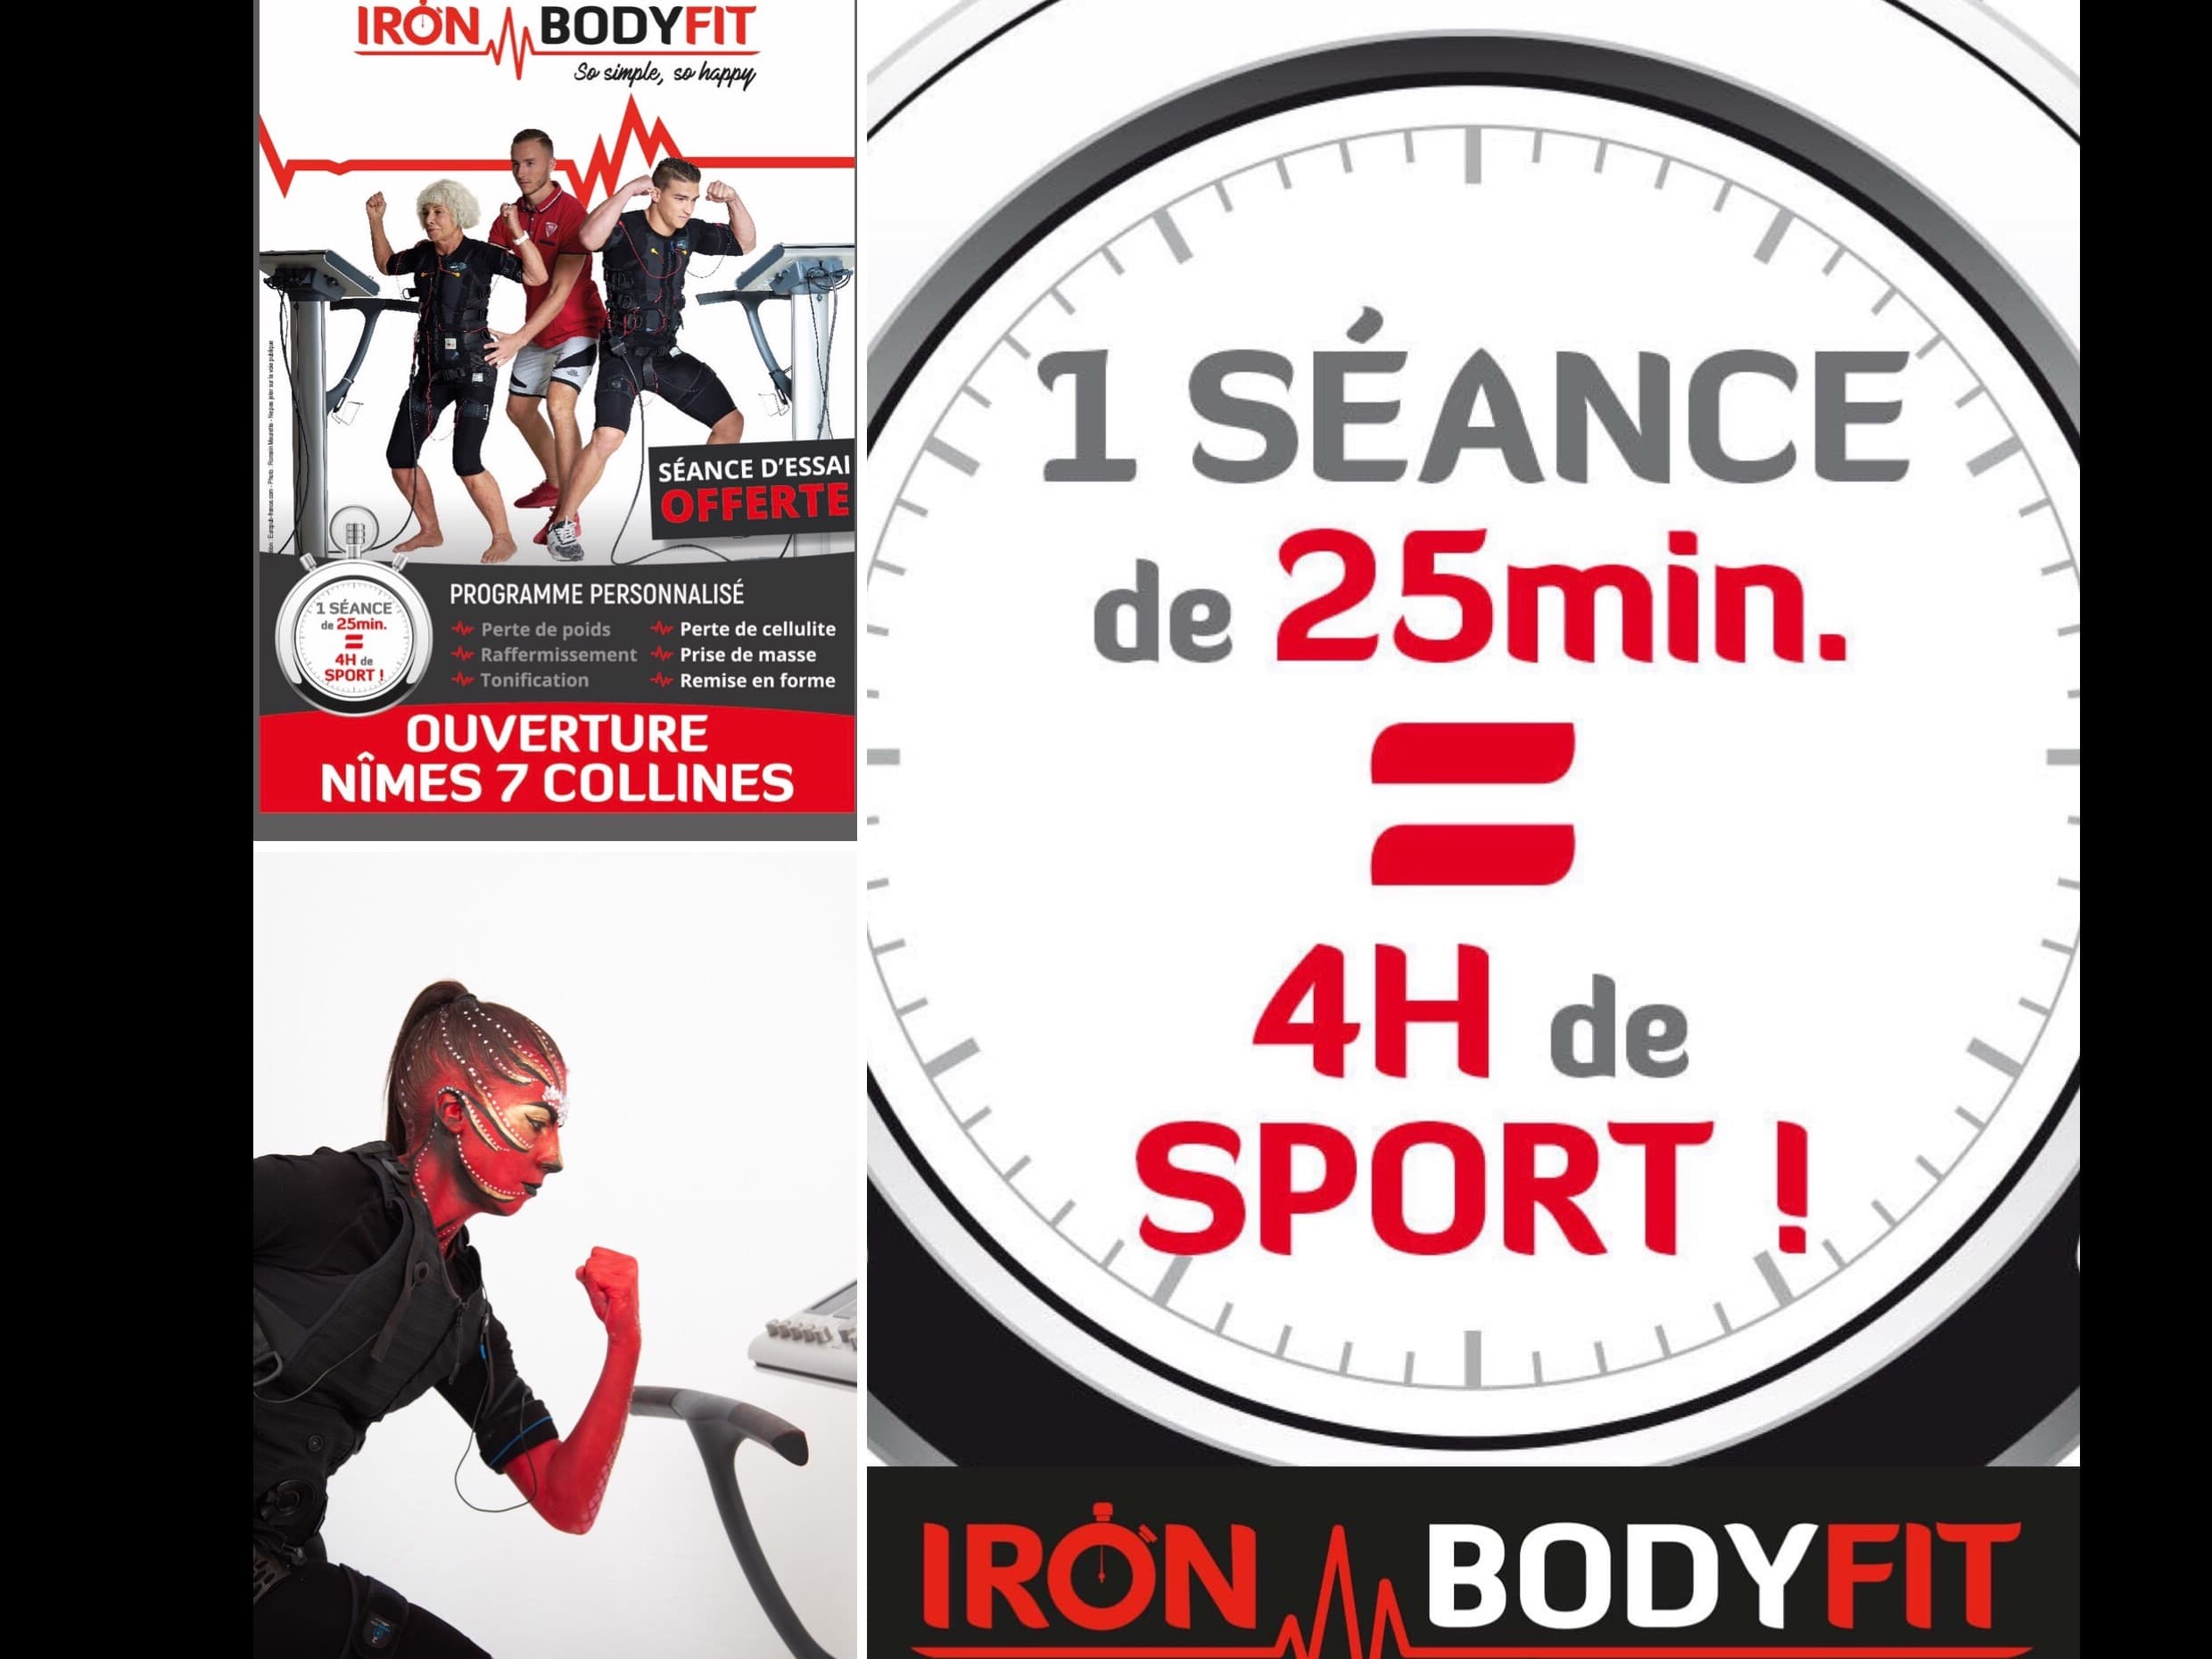 Iron Bodyfit Nîmes 7 Collines